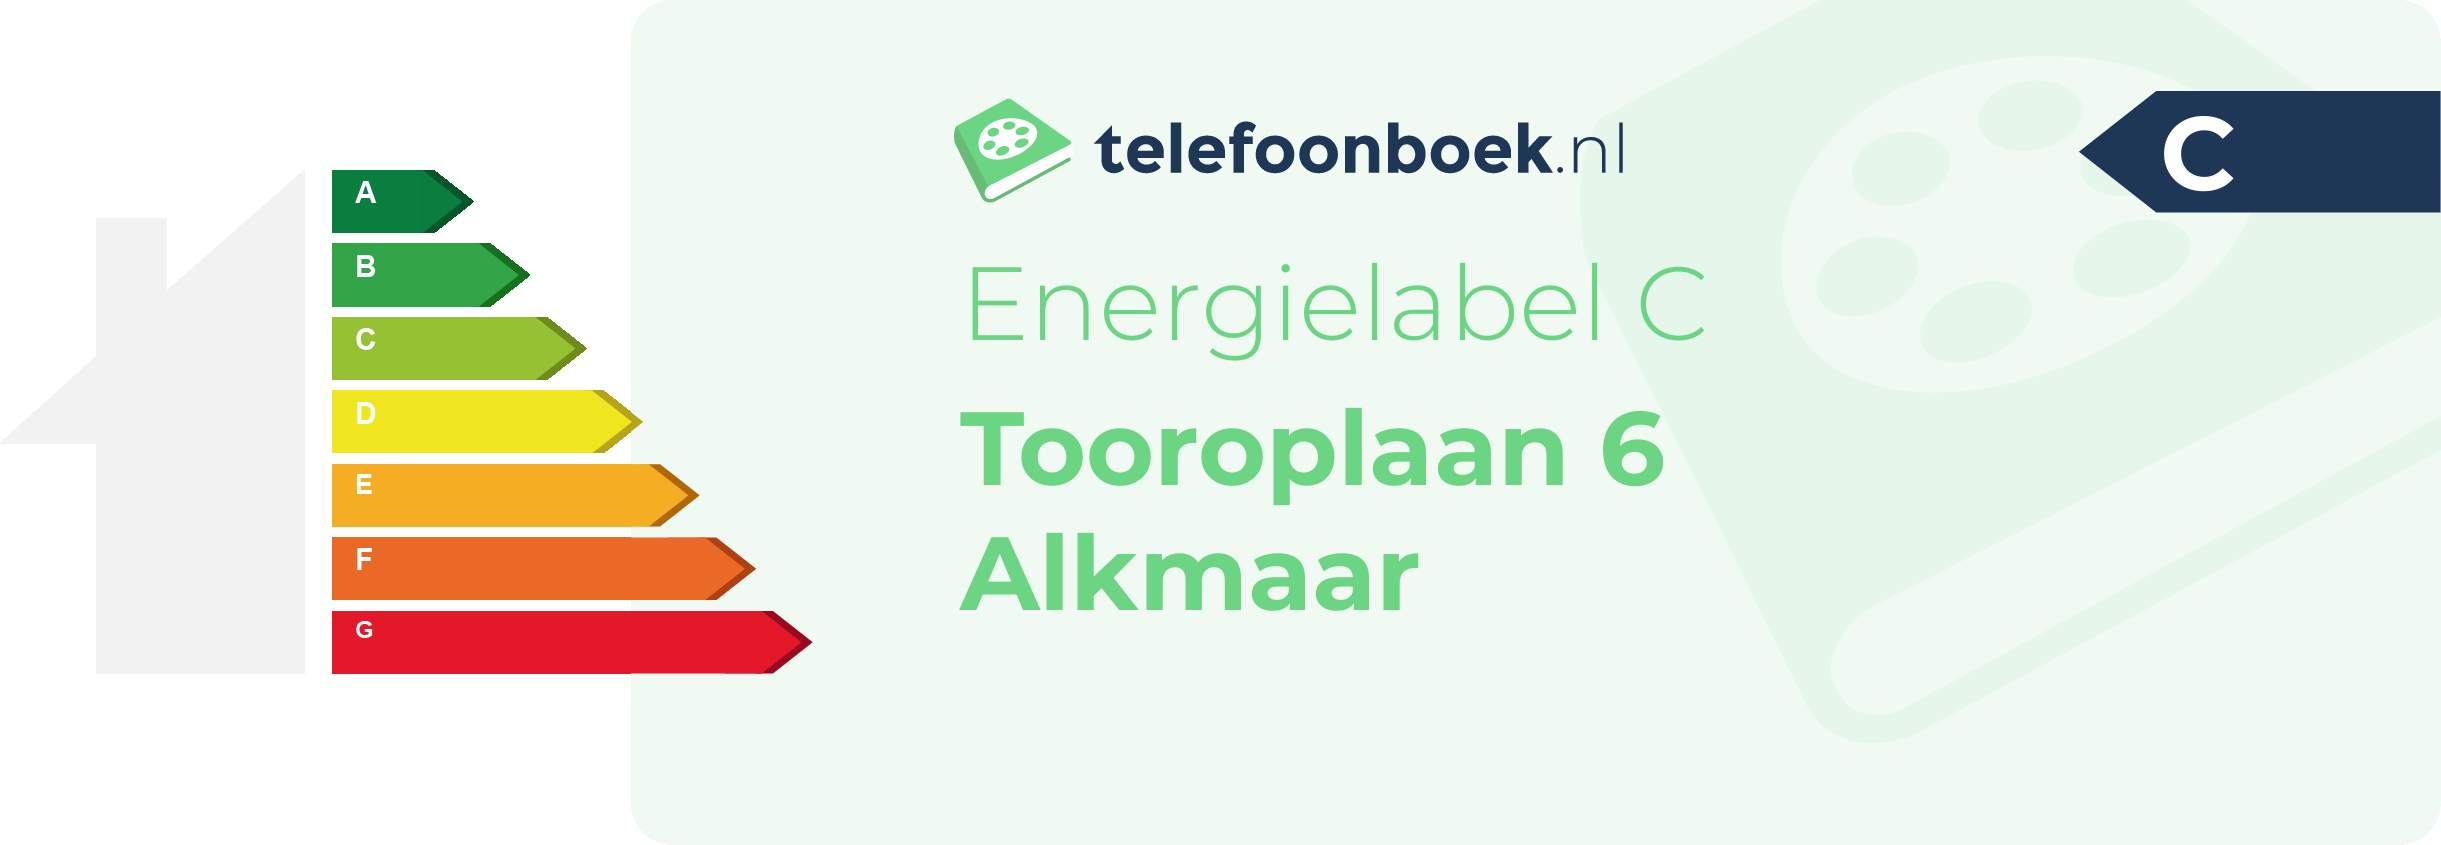 Energielabel Tooroplaan 6 Alkmaar